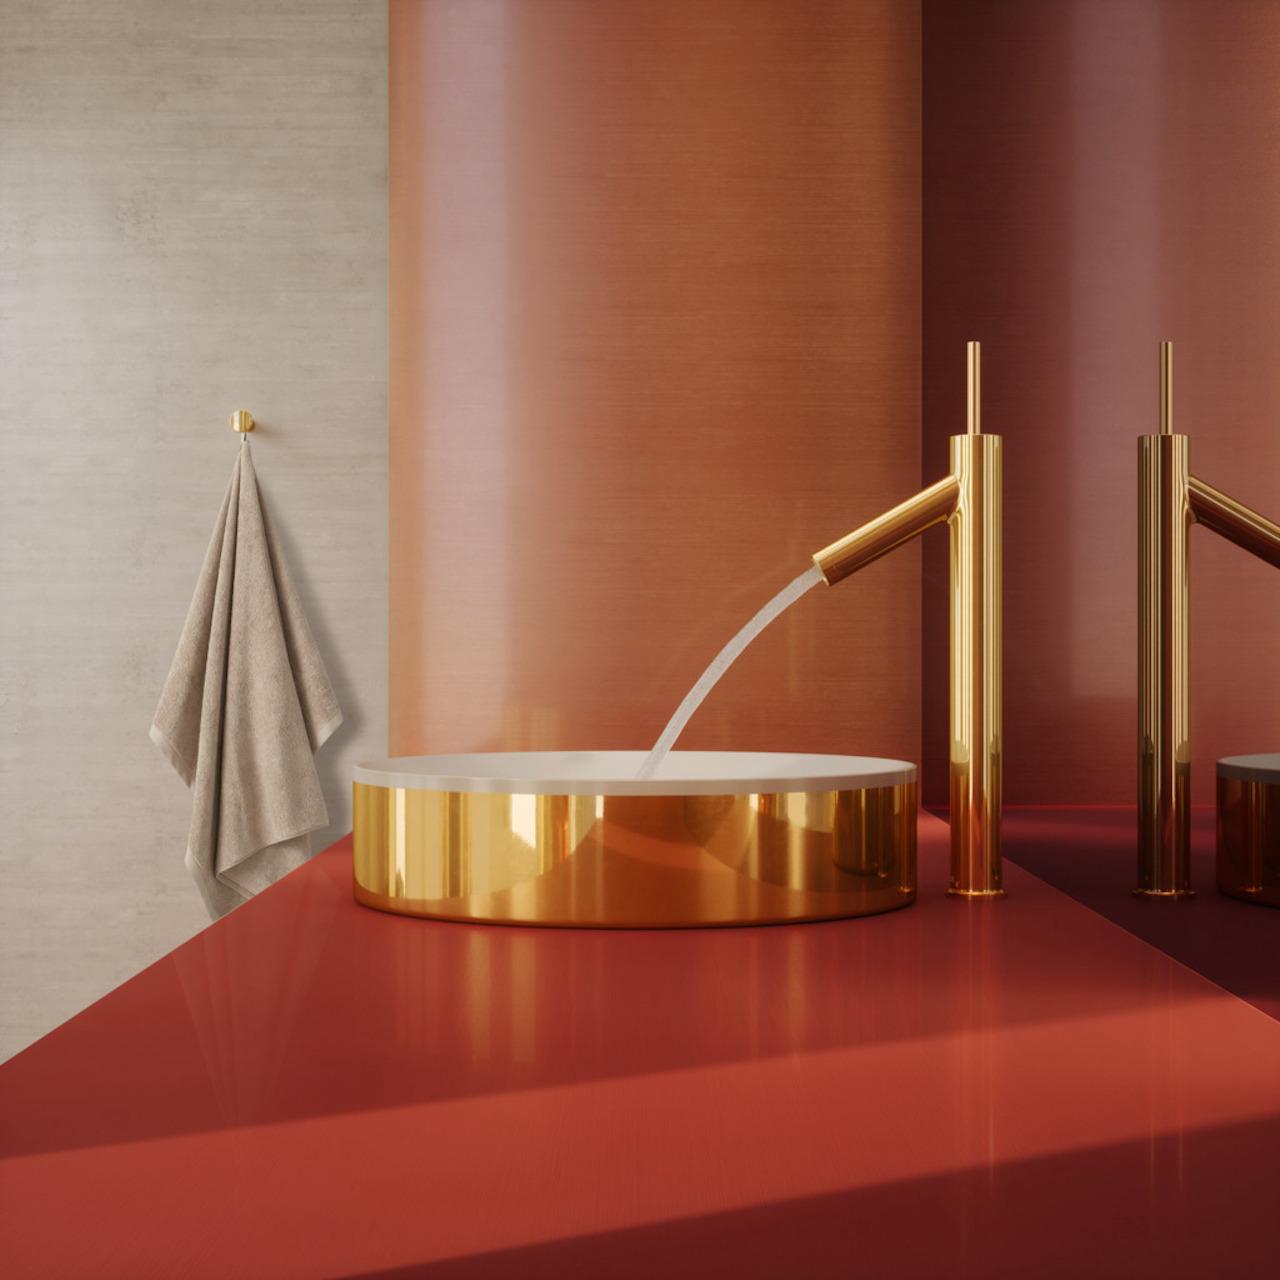 法國設計師Philippe Starck與AXOR合作，推出全新的衛浴產品